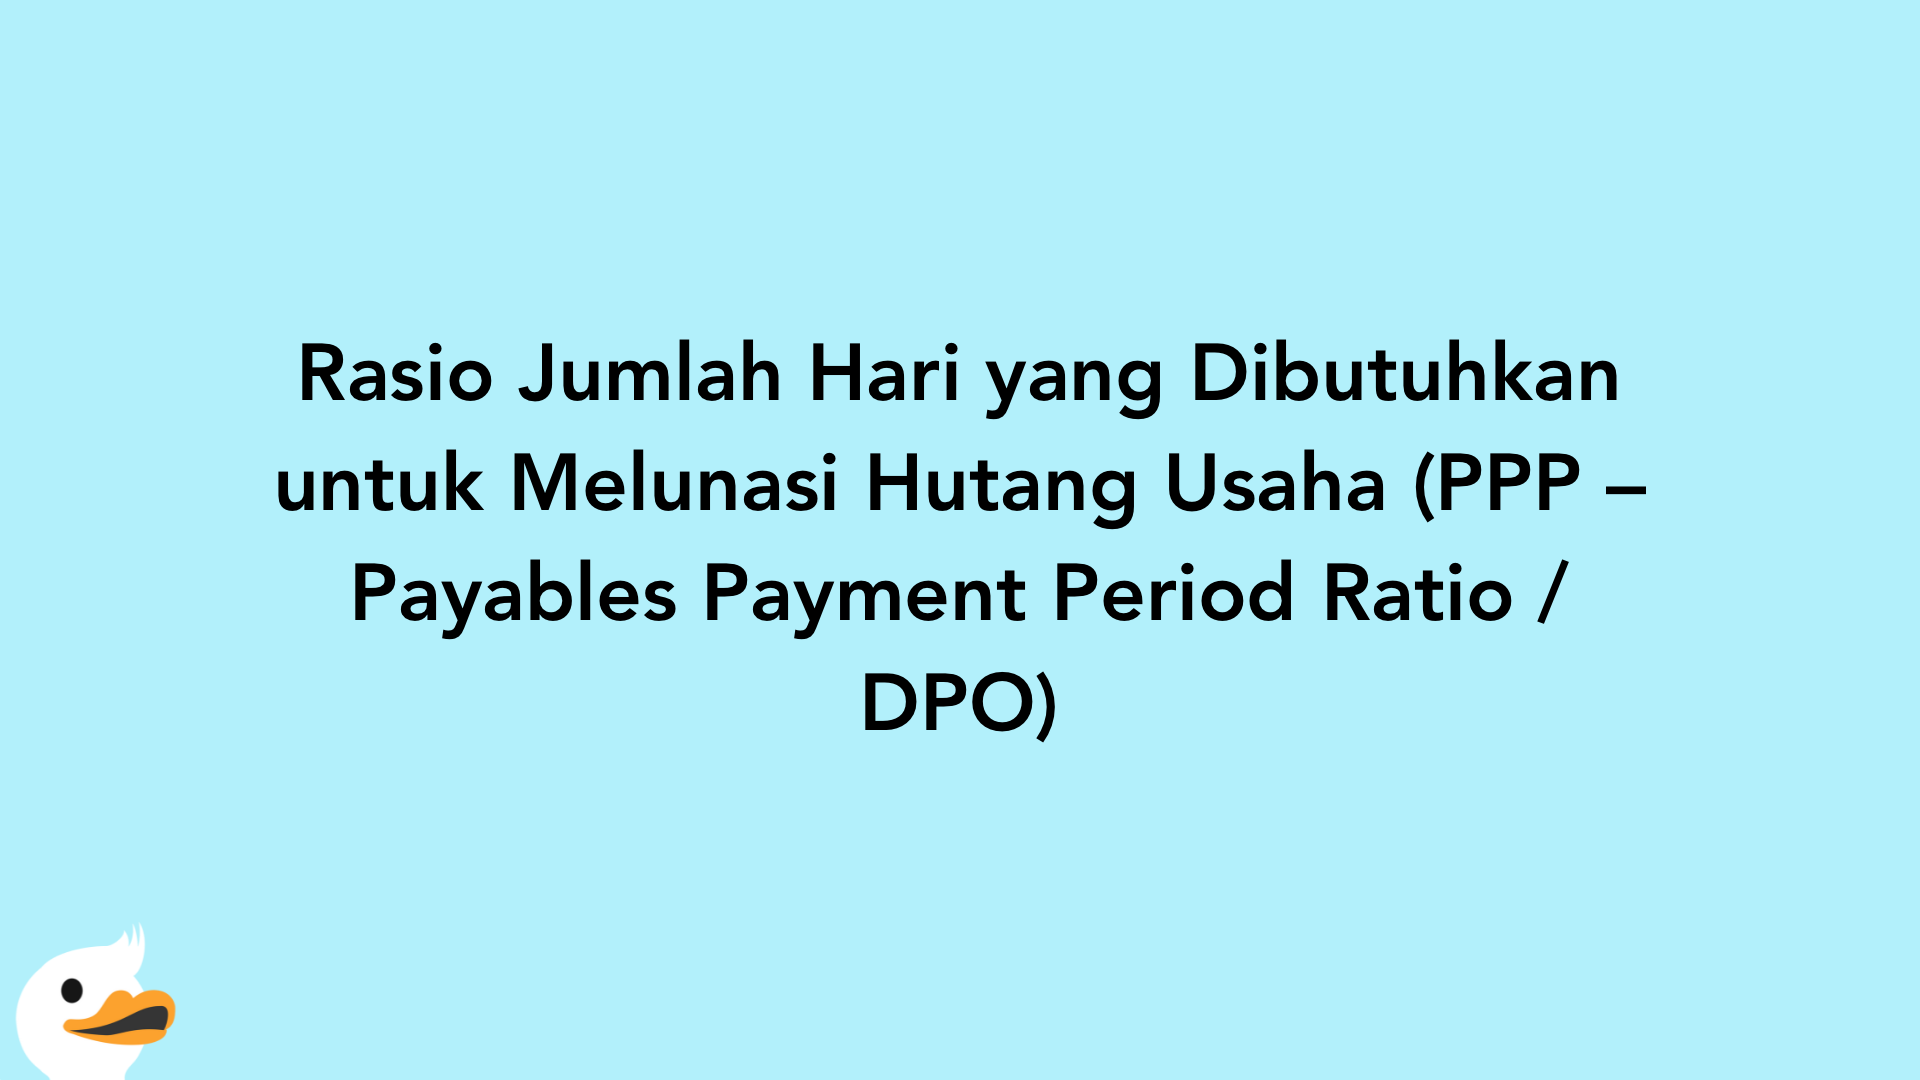 Rasio Jumlah Hari yang Dibutuhkan untuk Melunasi Hutang Usaha (PPP – Payables Payment Period Ratio / DPO)